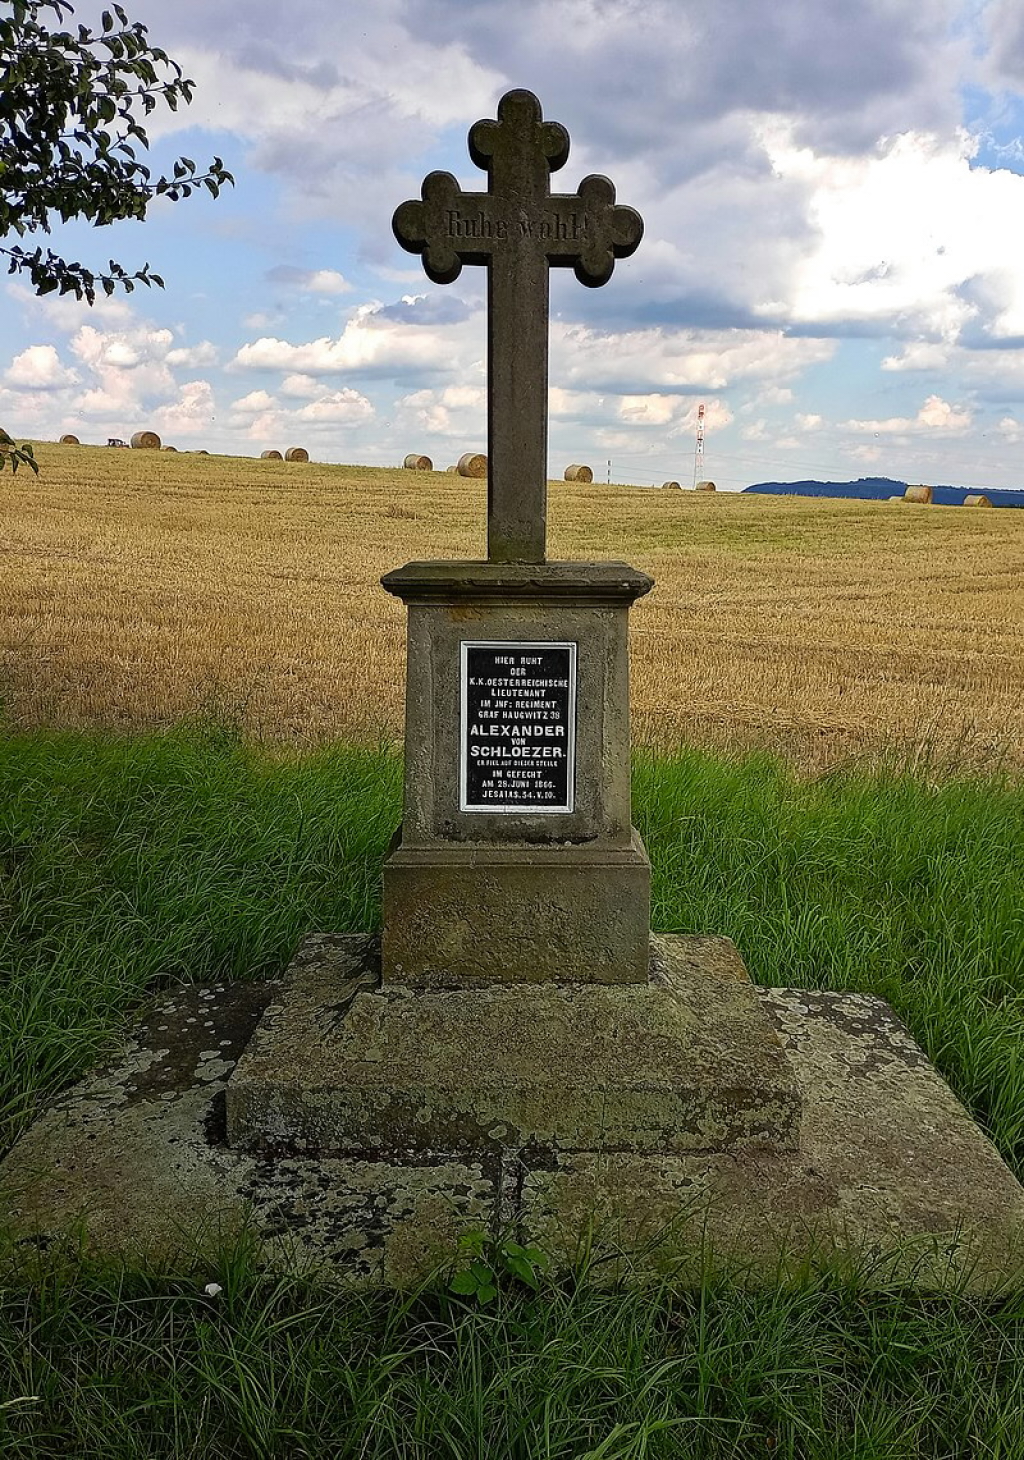 Takto vypadal pomník před zásahem neznámého pachatele. Foto: Eliška Jindříšková, Wikimedia